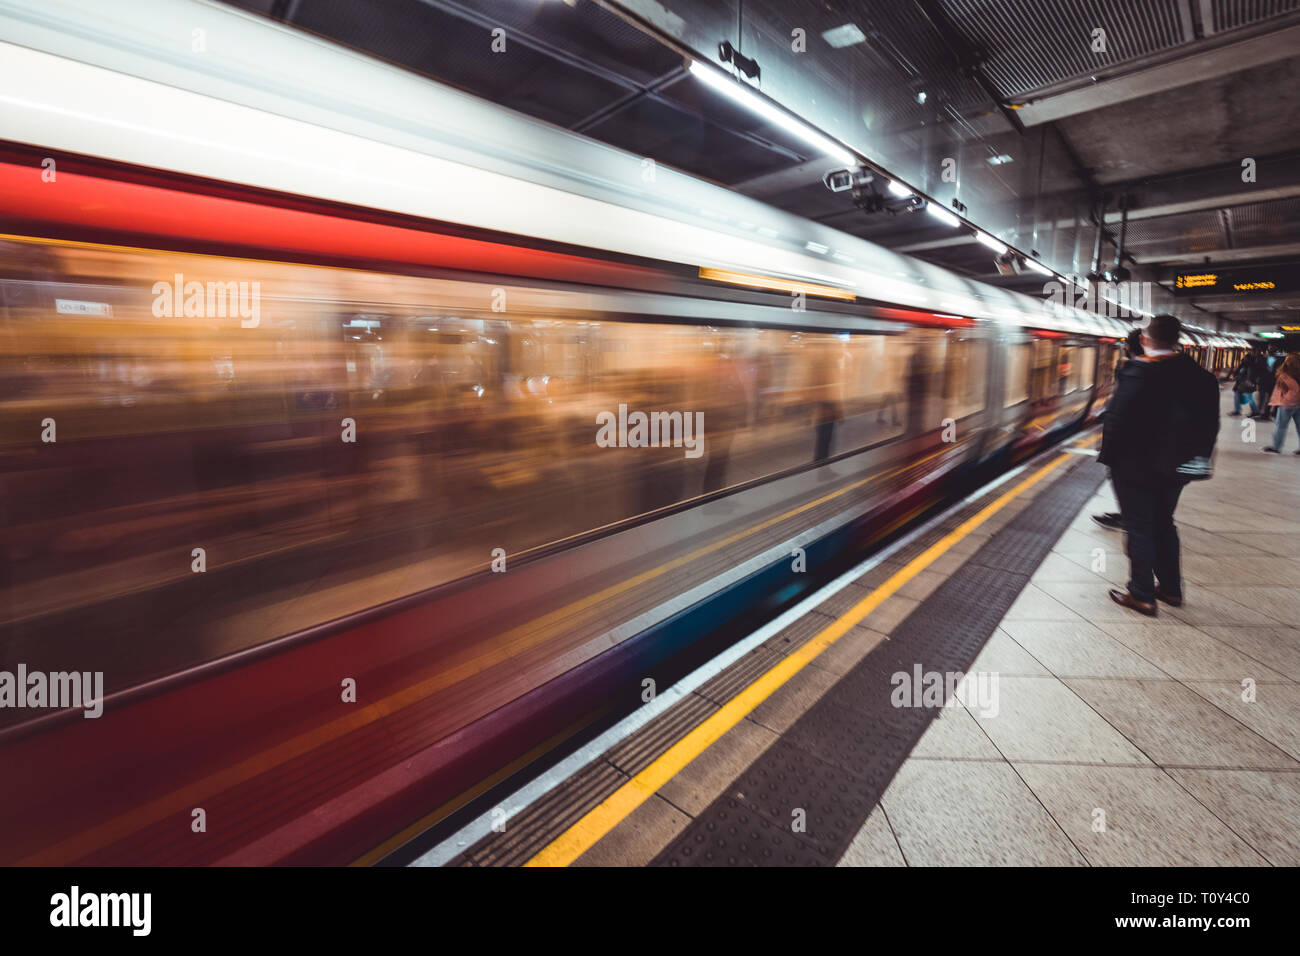 Londra - MARZO 20, 2019: treno arrivando alla piattaforma alla stazione della metropolitana di Westminster a Londra Foto Stock